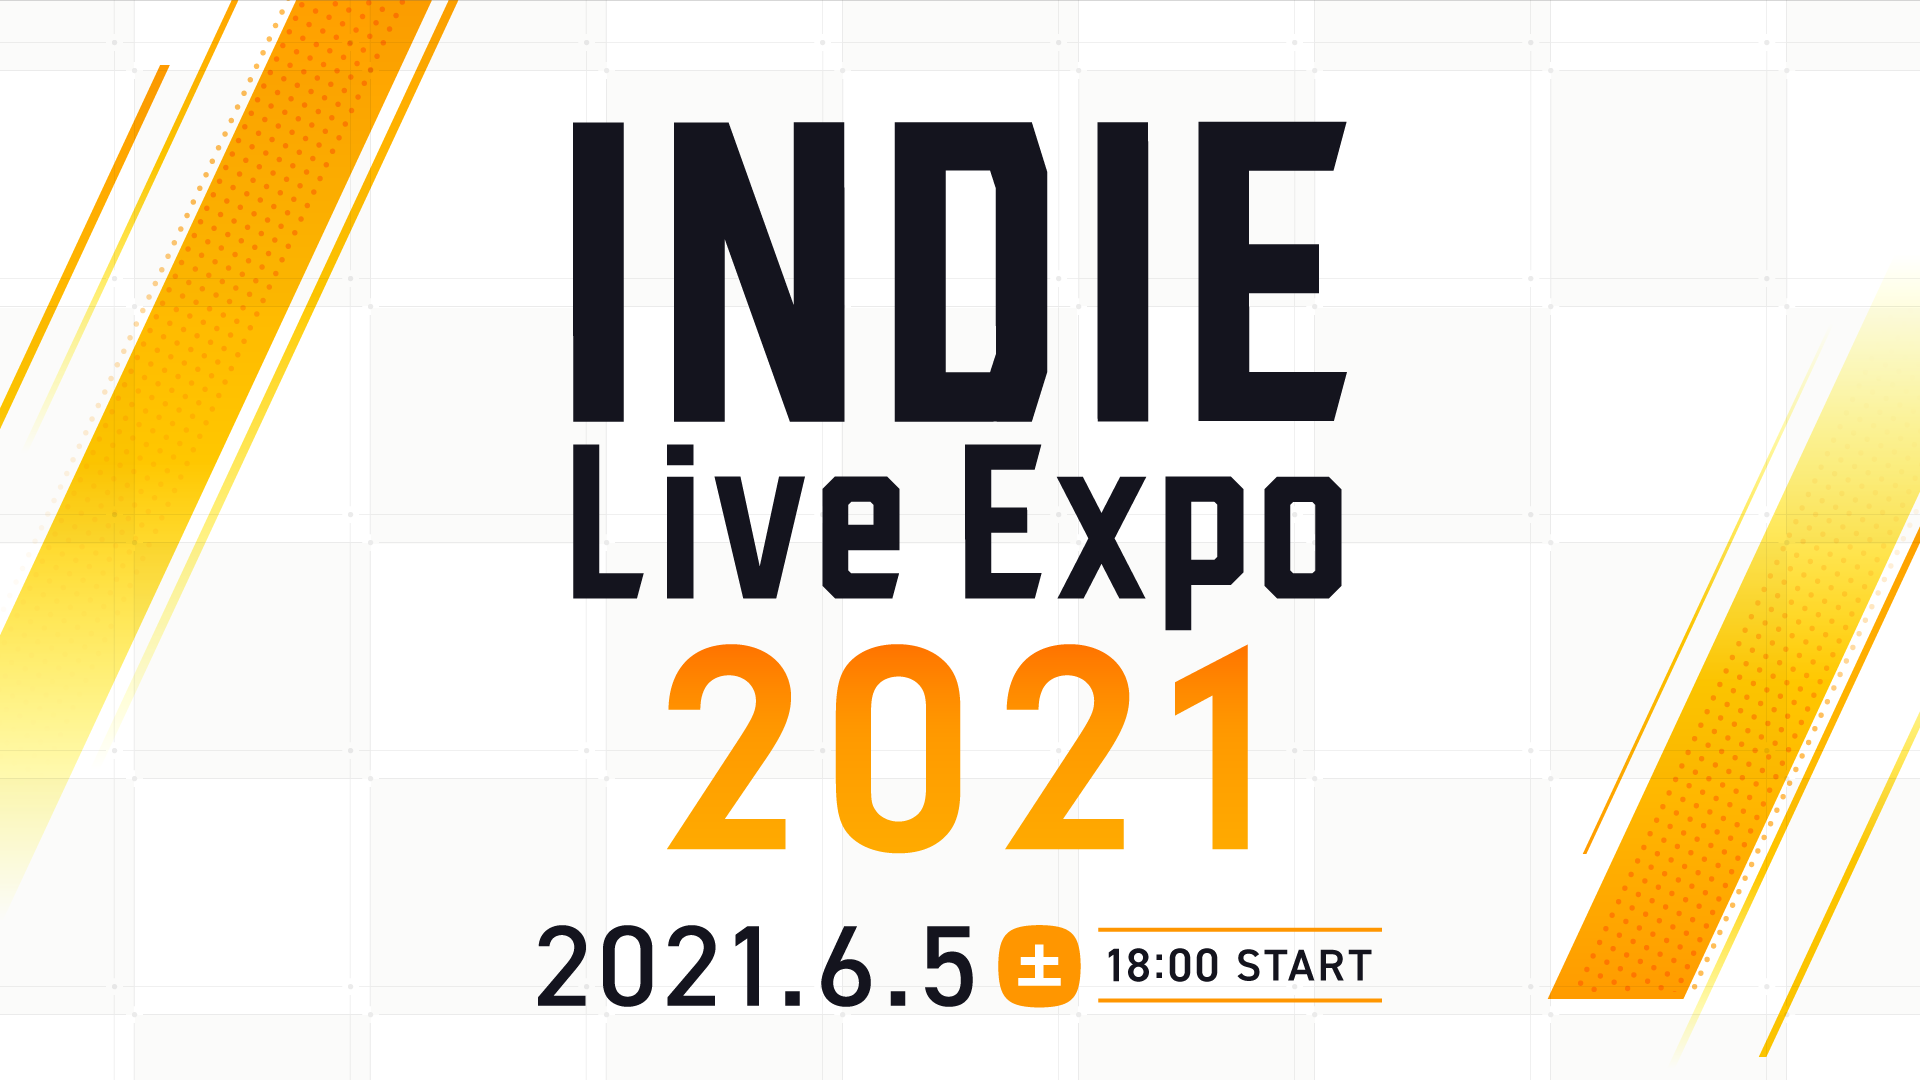 インディーゲーム情報番組「INDIE Live Expo 2021」6月5日18時からの放送を控えて、駐日ポーランド共和国大使館とポーランド投資・貿易庁による後援を発表。中国語版・英語版応援放送の追加実施も決定_001